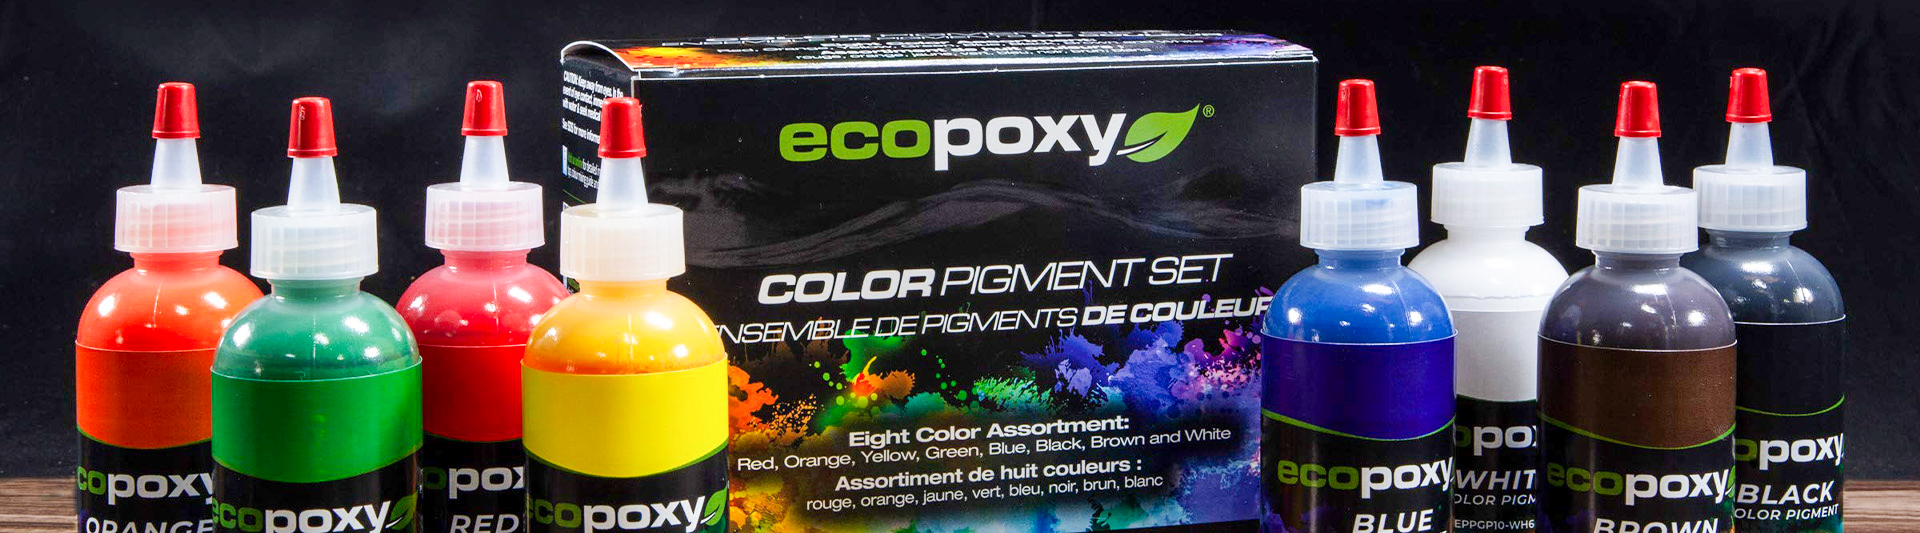 EcoPoxy